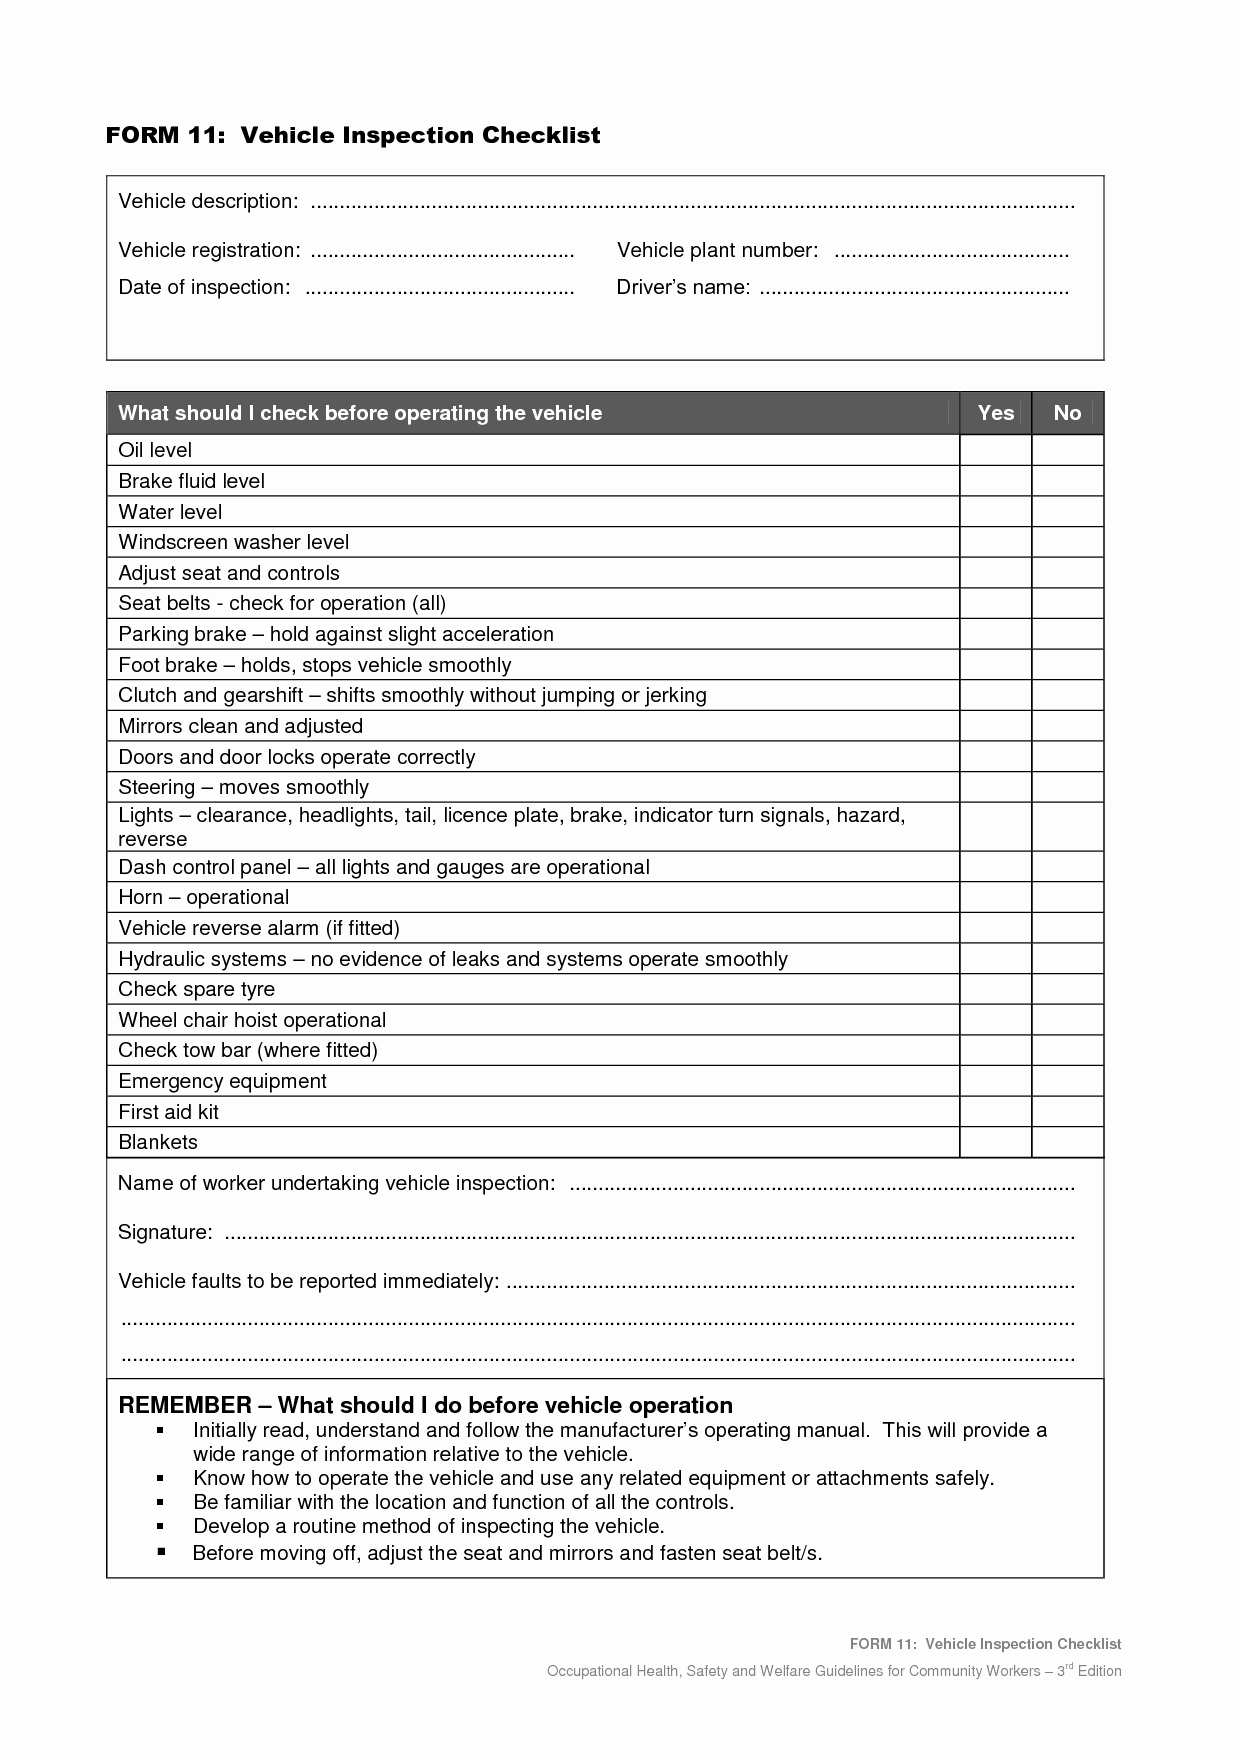 Vehicle Inspection Checklist Template Unique Vehicle Safety Inspection Checklist form